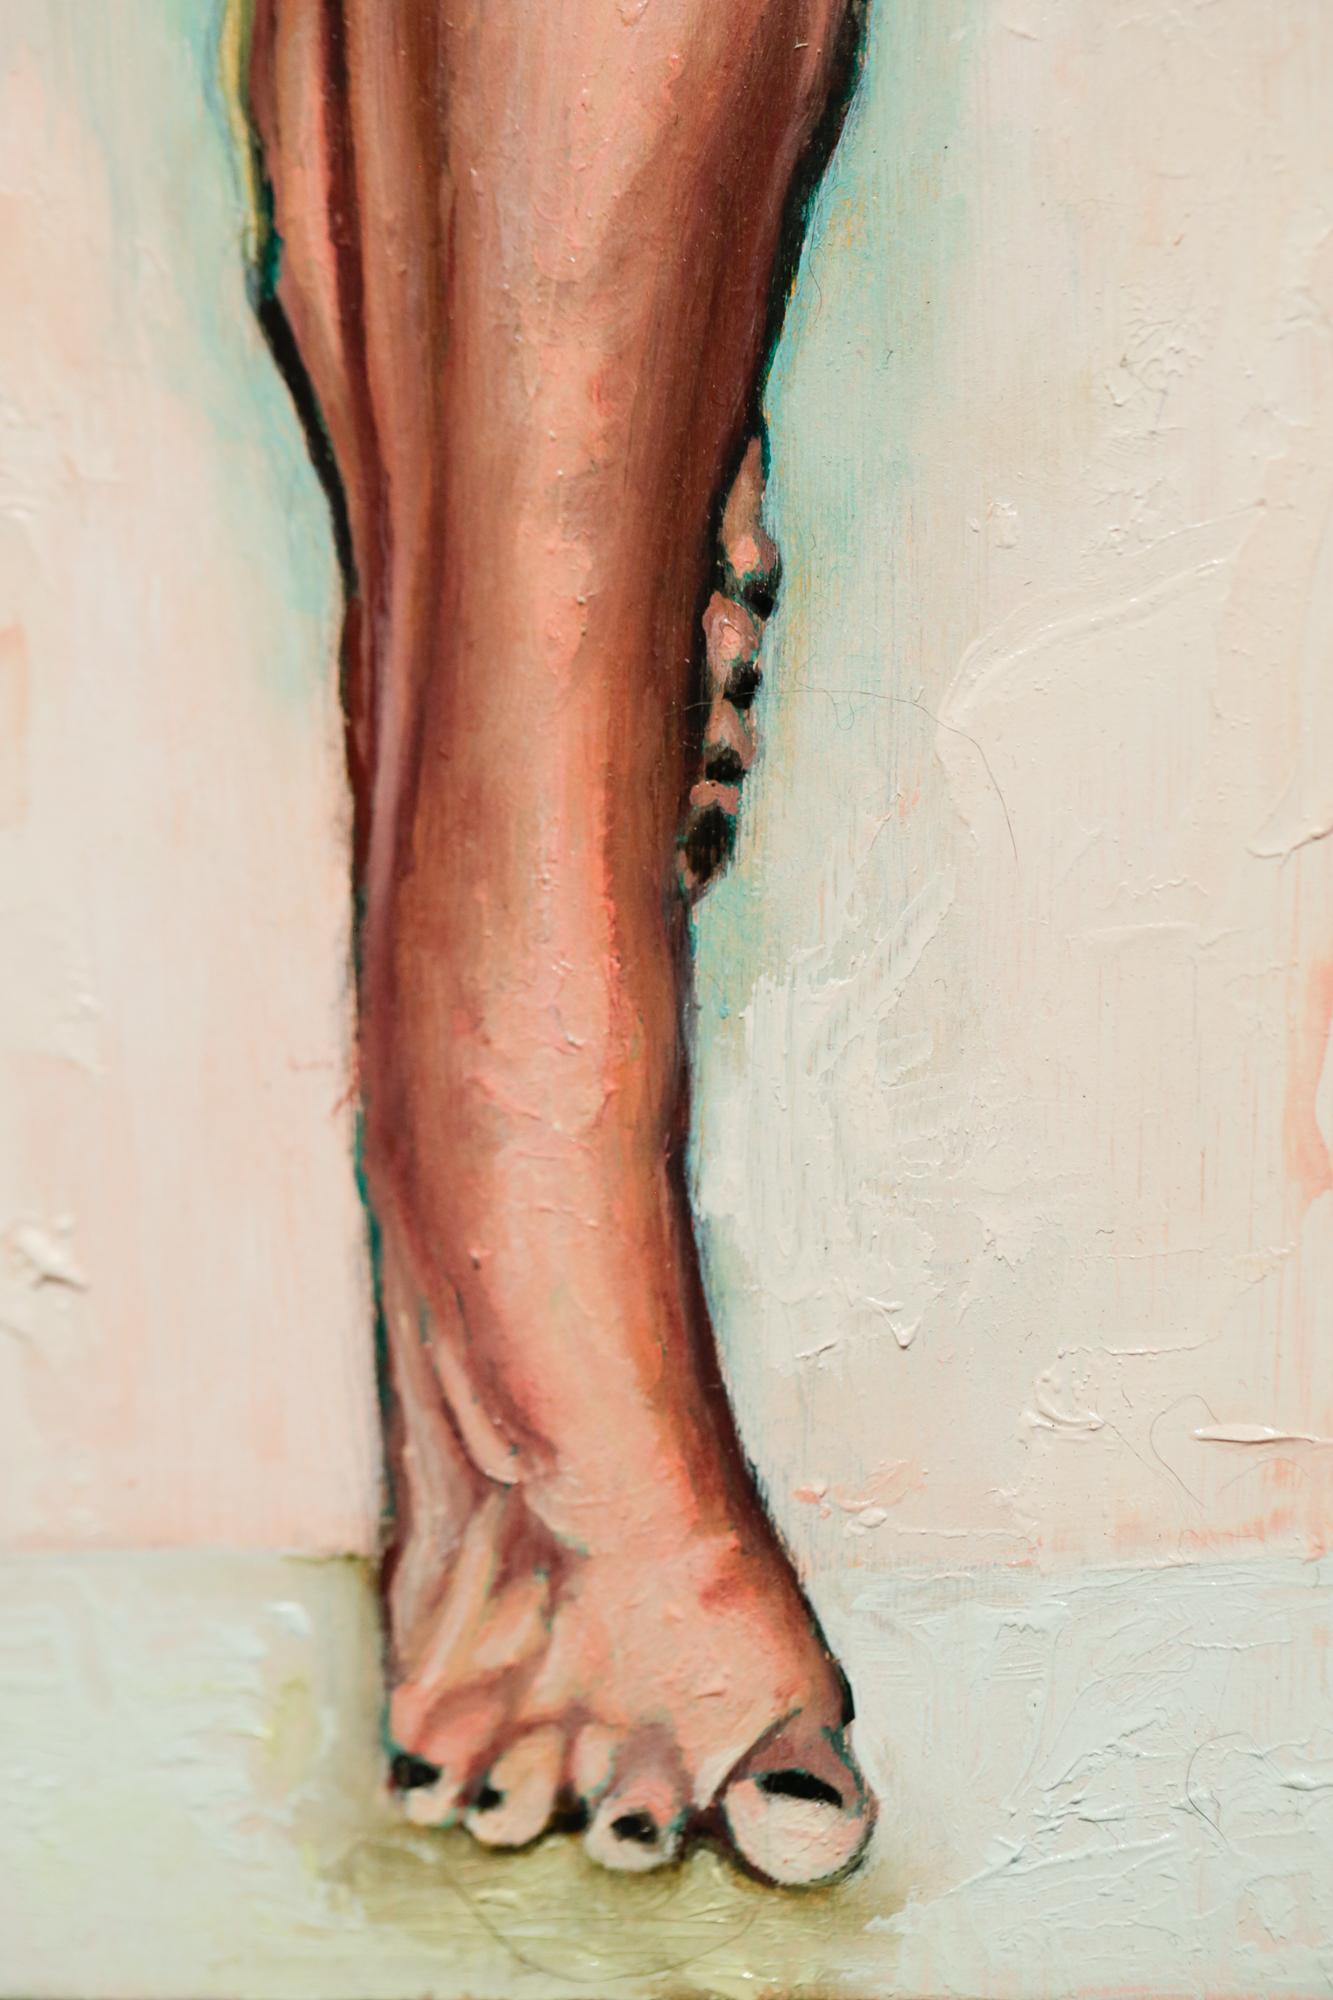 Il s'agit d'une peinture à l'huile originale sur panneau de Lauren Rinaldi mesurant 12in x 6in. 

Le travail de Lauren Rinaldi se situe dans l'espace où l'objectivation, le pouvoir féminin et l'autonomisation sexuelle se croisent et se confondent.